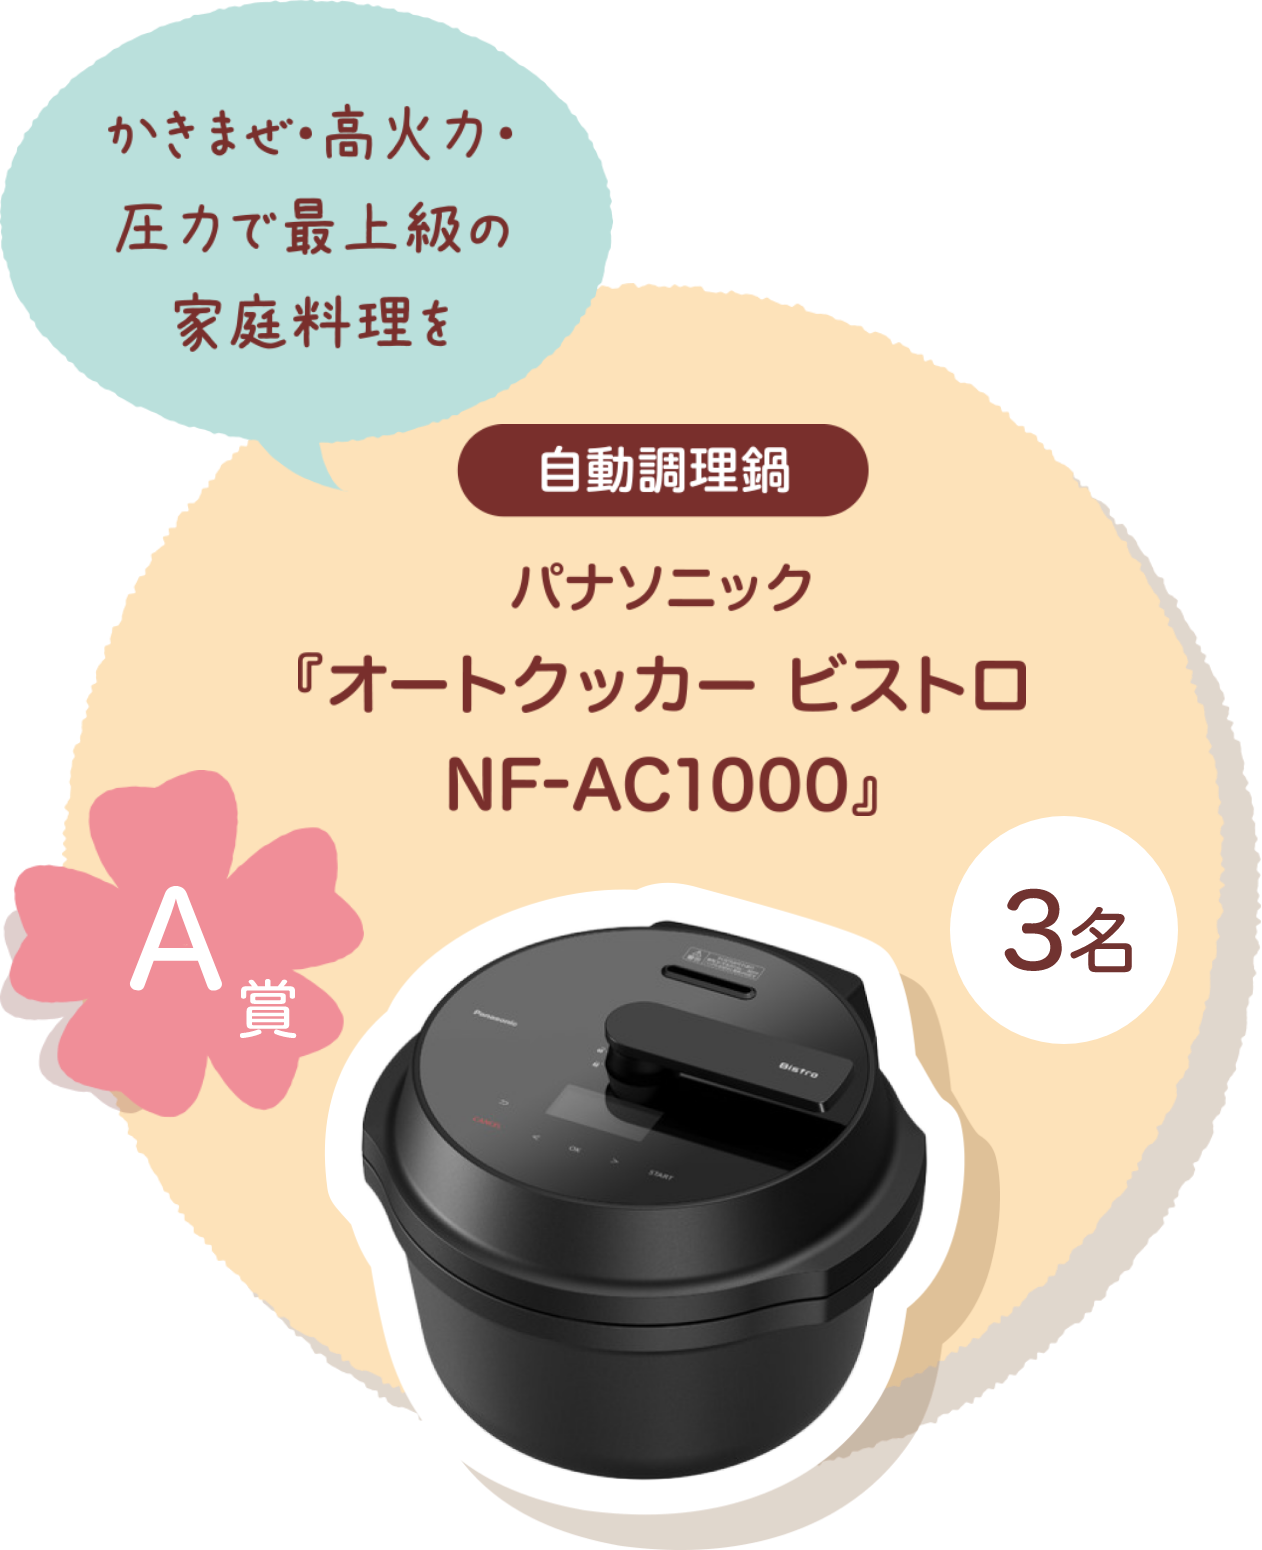 ■A賞:自動調理鍋 パナソニック「オートクッカー ビストロ NF-AC1000」3名様